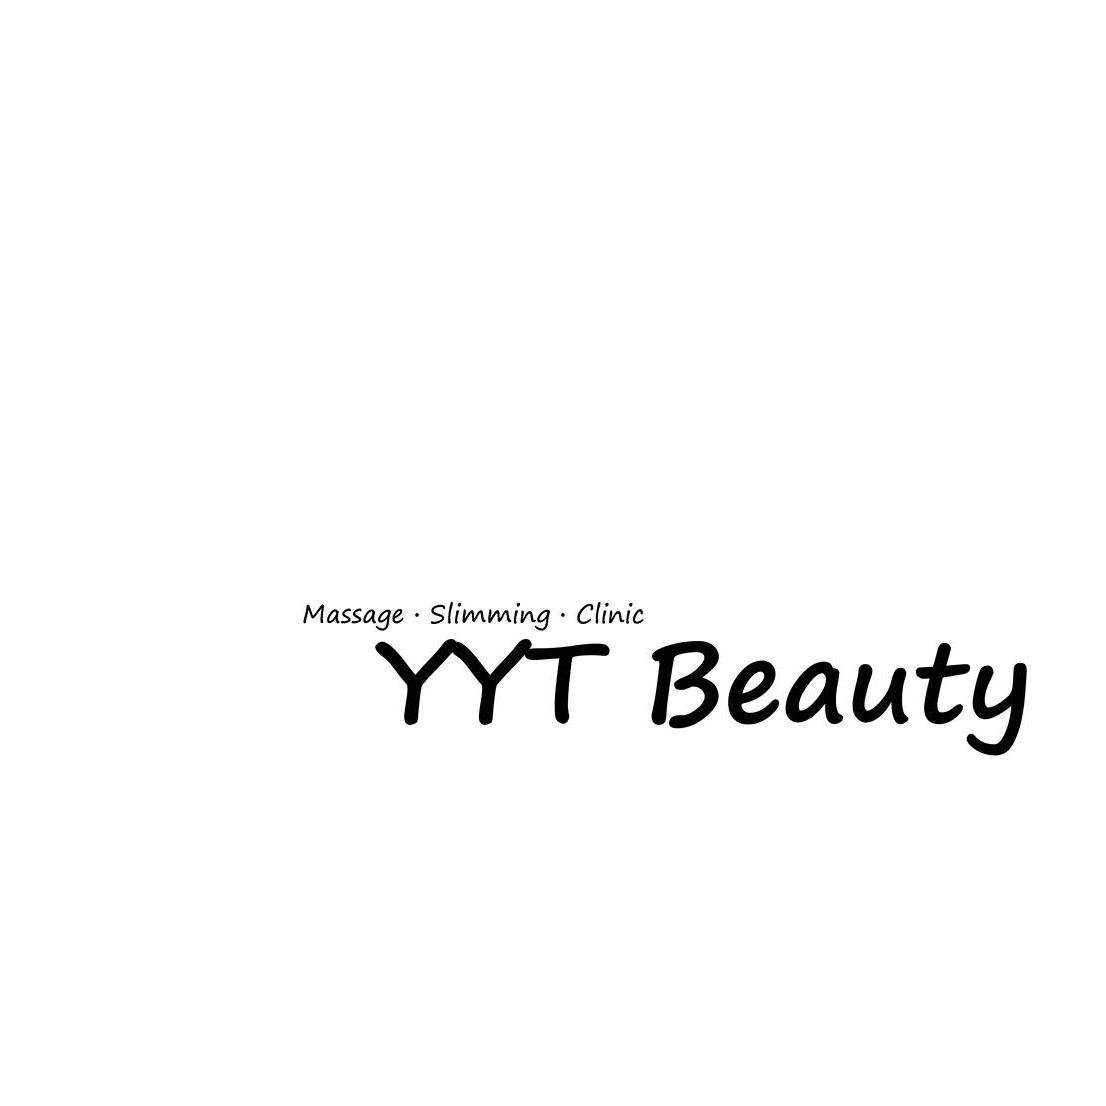 醫學美容: YYT Beauty (旺角)